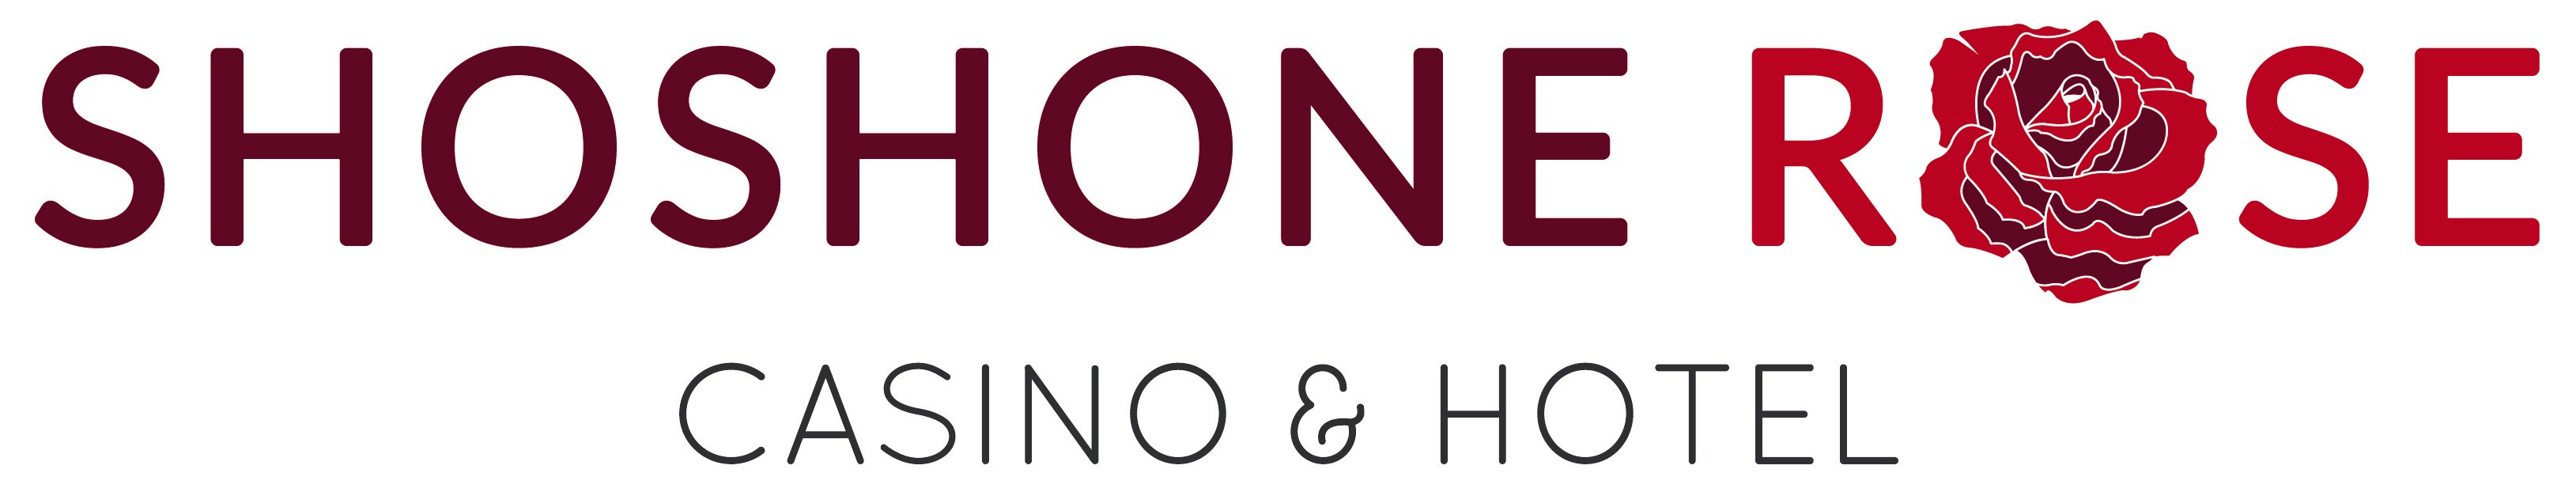 Logo for Shoshone Rose Casino & Hotel